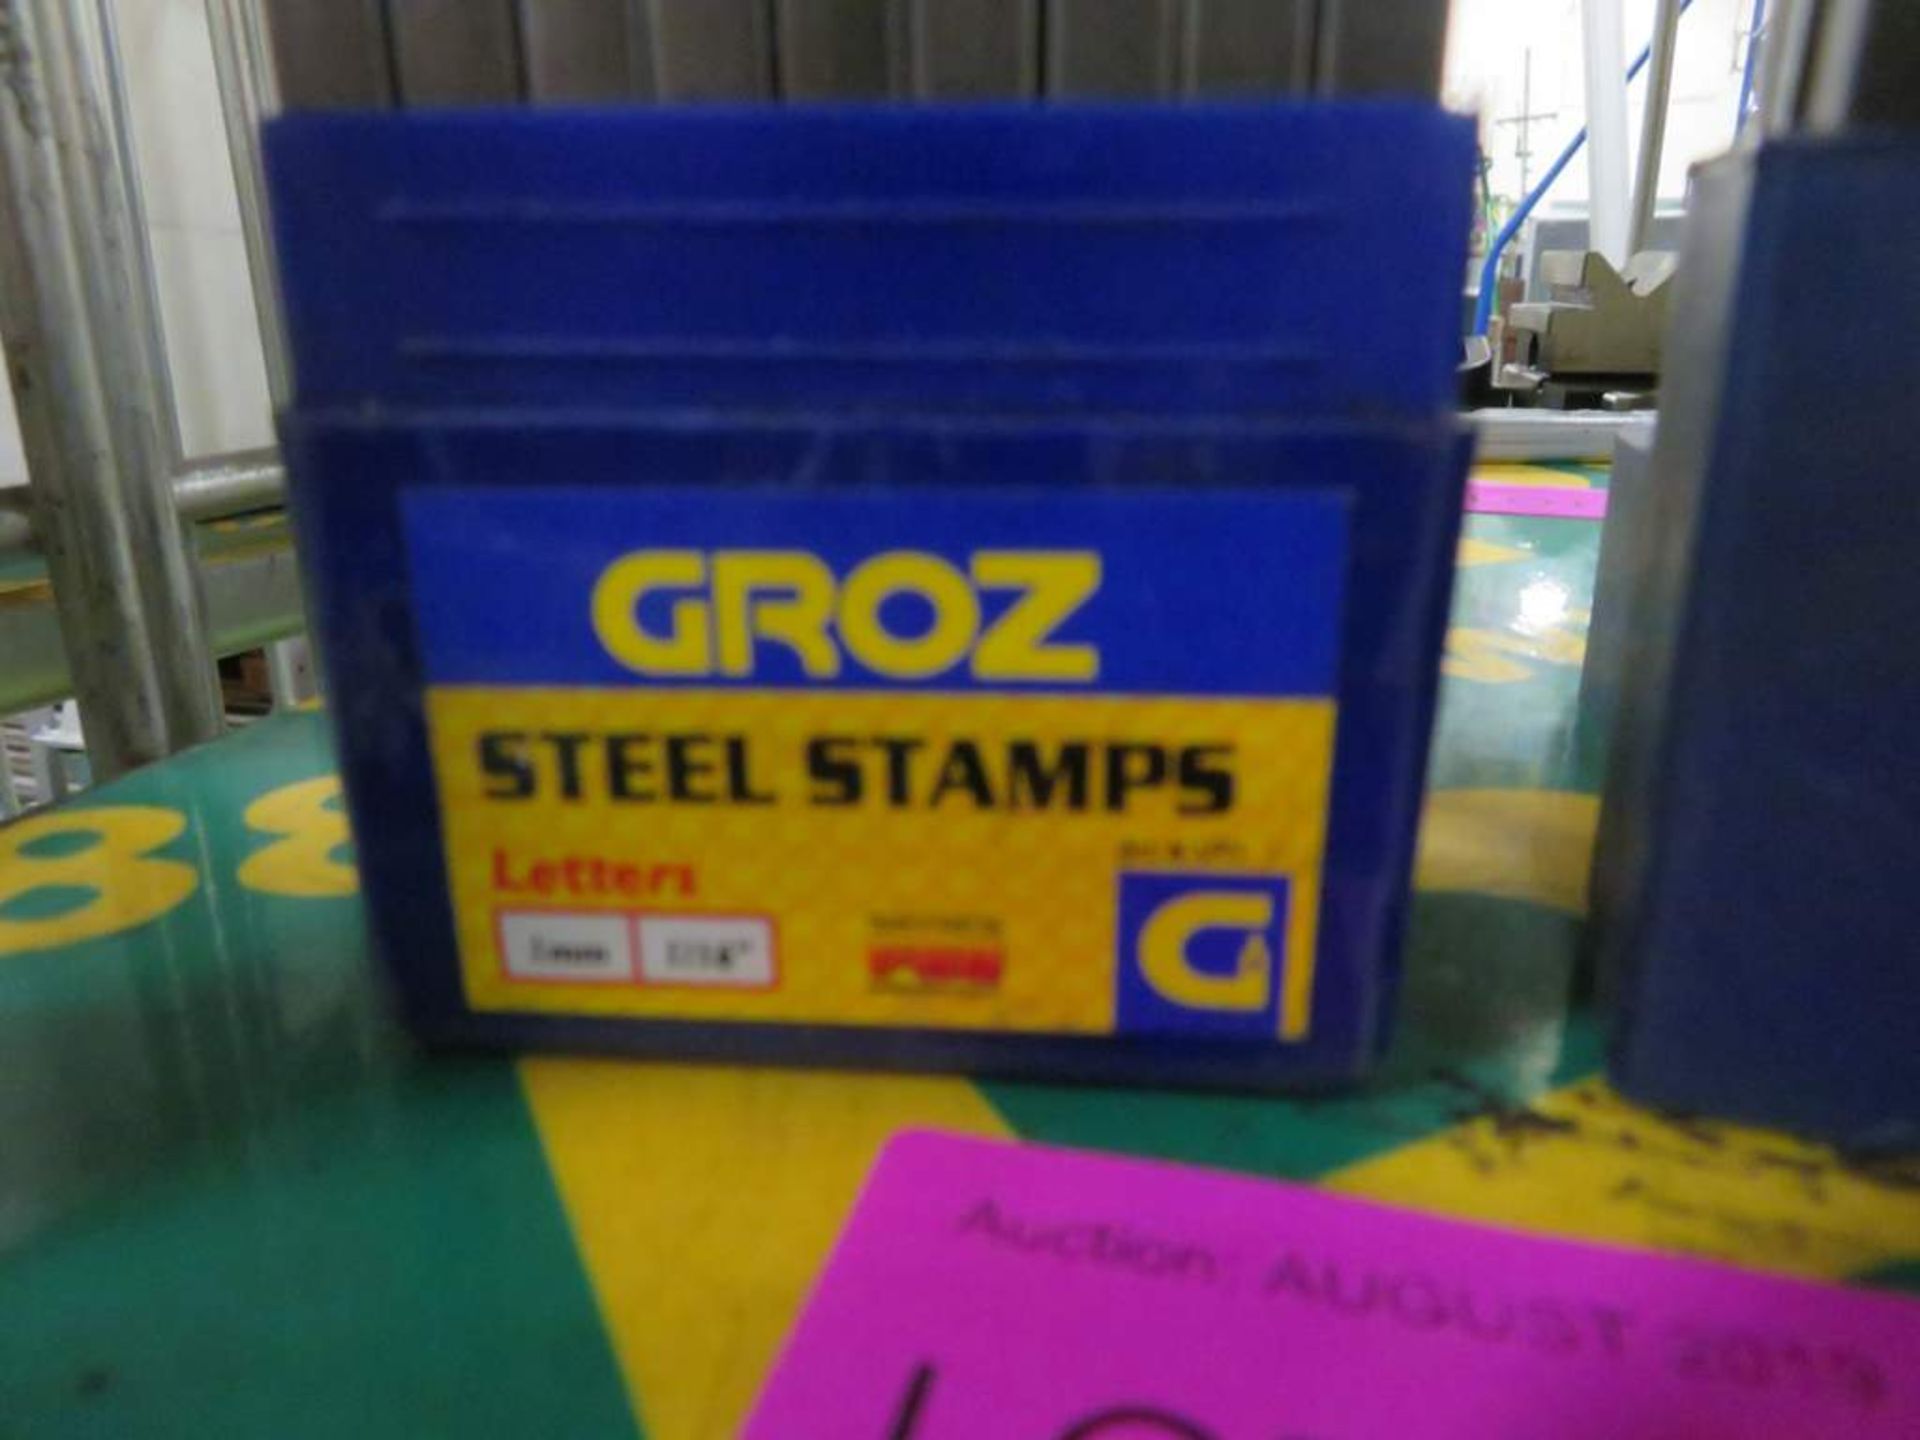 Groz stamp sets - Number & Letter - Image 3 of 3